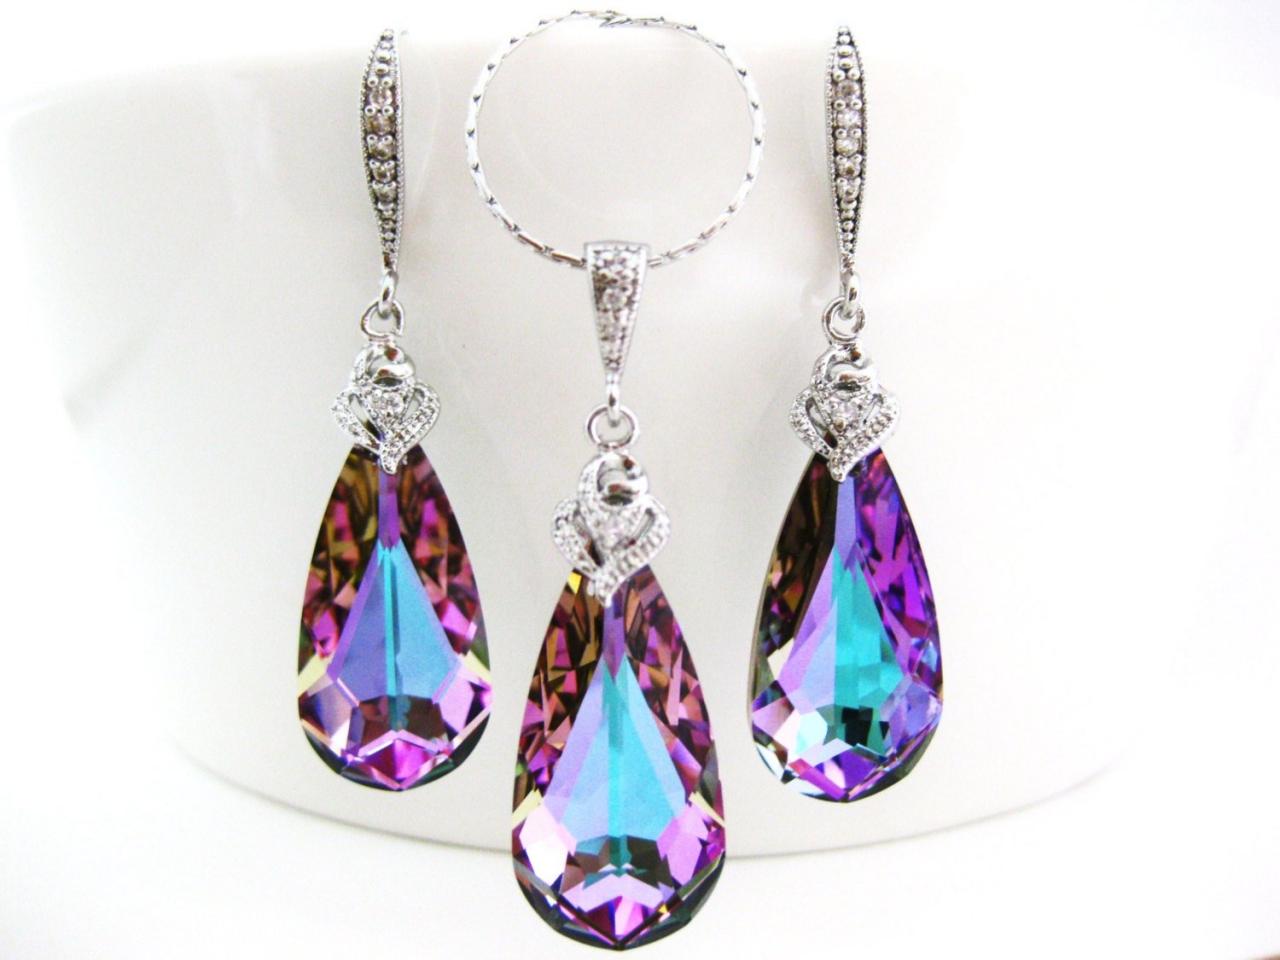 Vitrail Light Swarovski Crystal Teardrop Earrings & Necklace Gift Set Purple Earrings Pink Jewelry Wedding Jewelry Bridal Jewelry